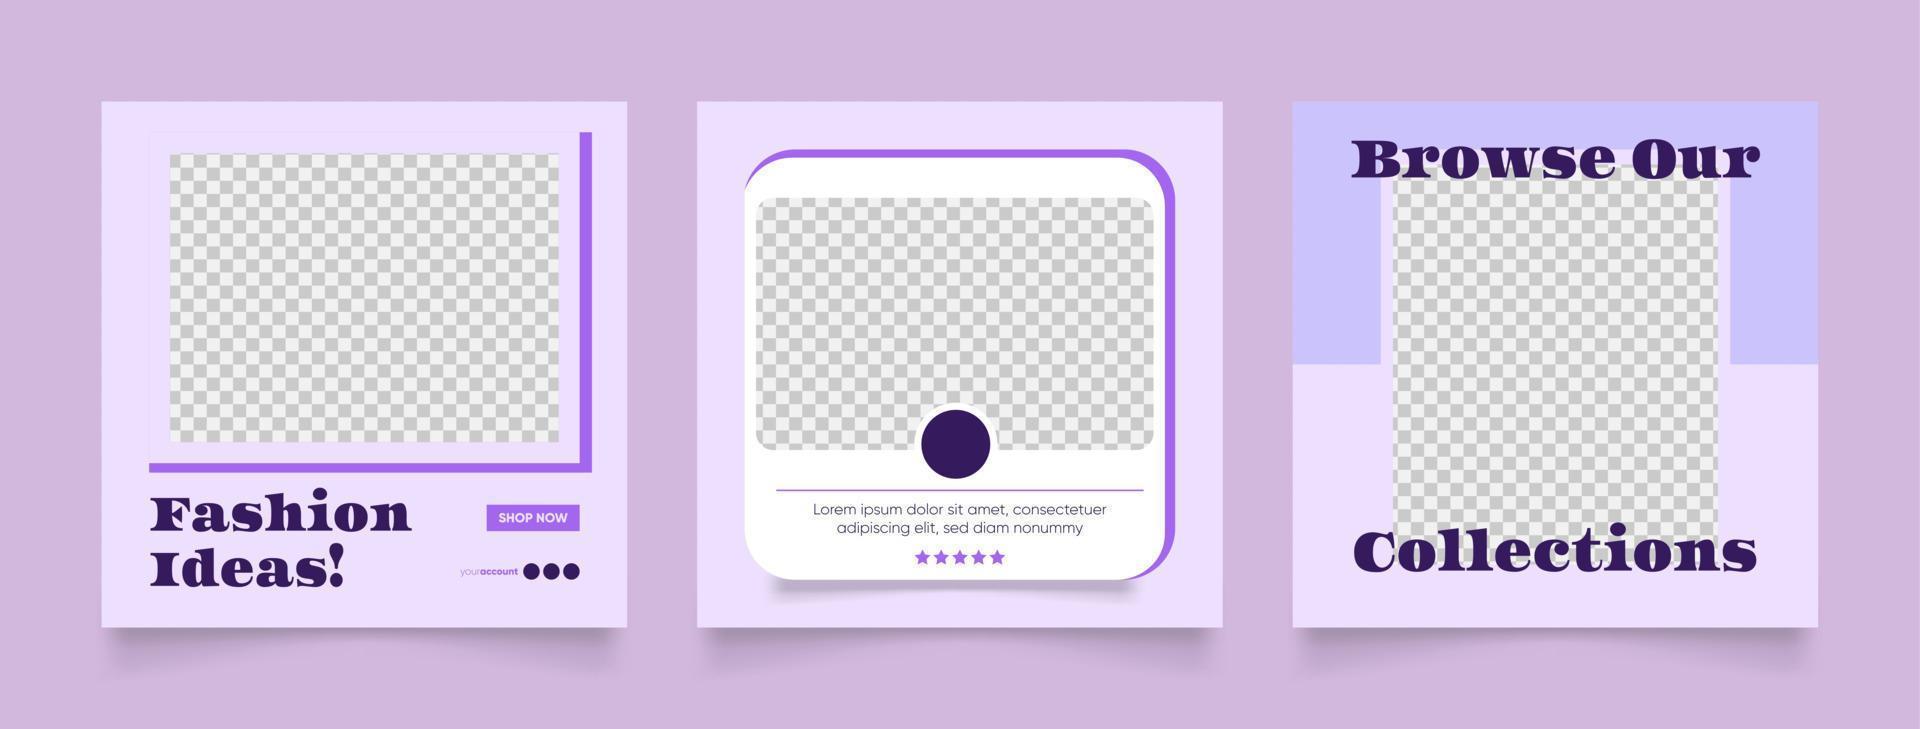 promoción de venta de moda de banner de plantilla de redes sociales en color púrpura vector